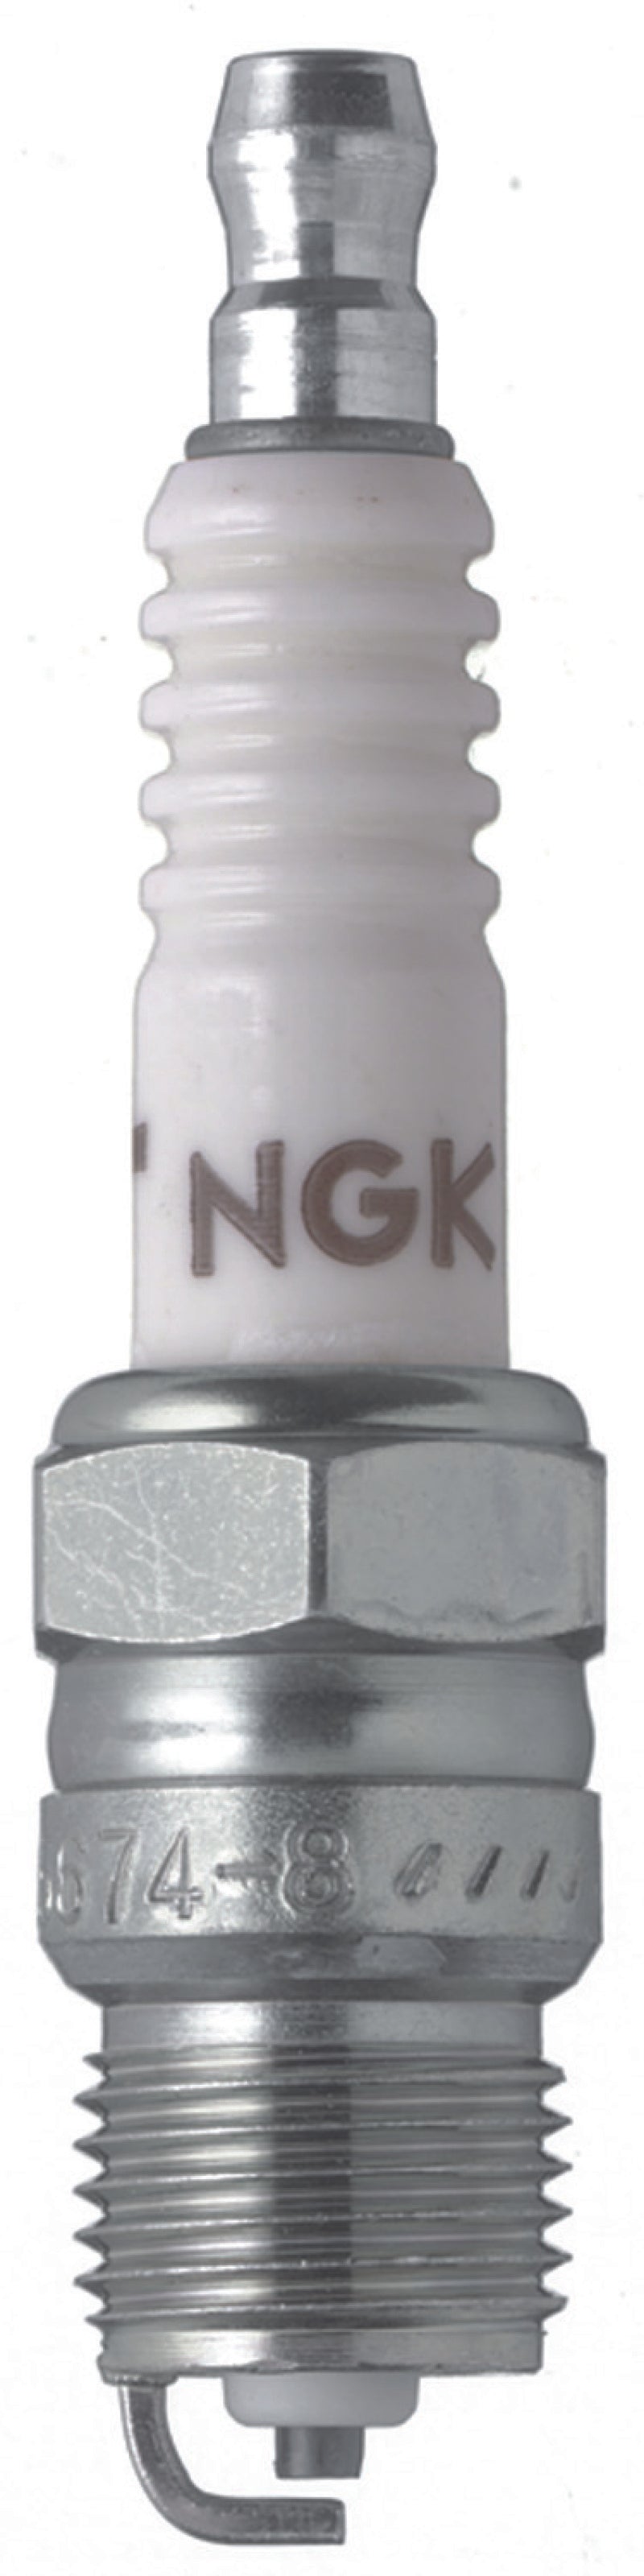 NGK Nickel Spark Plug Box of 4 (R5674-10)